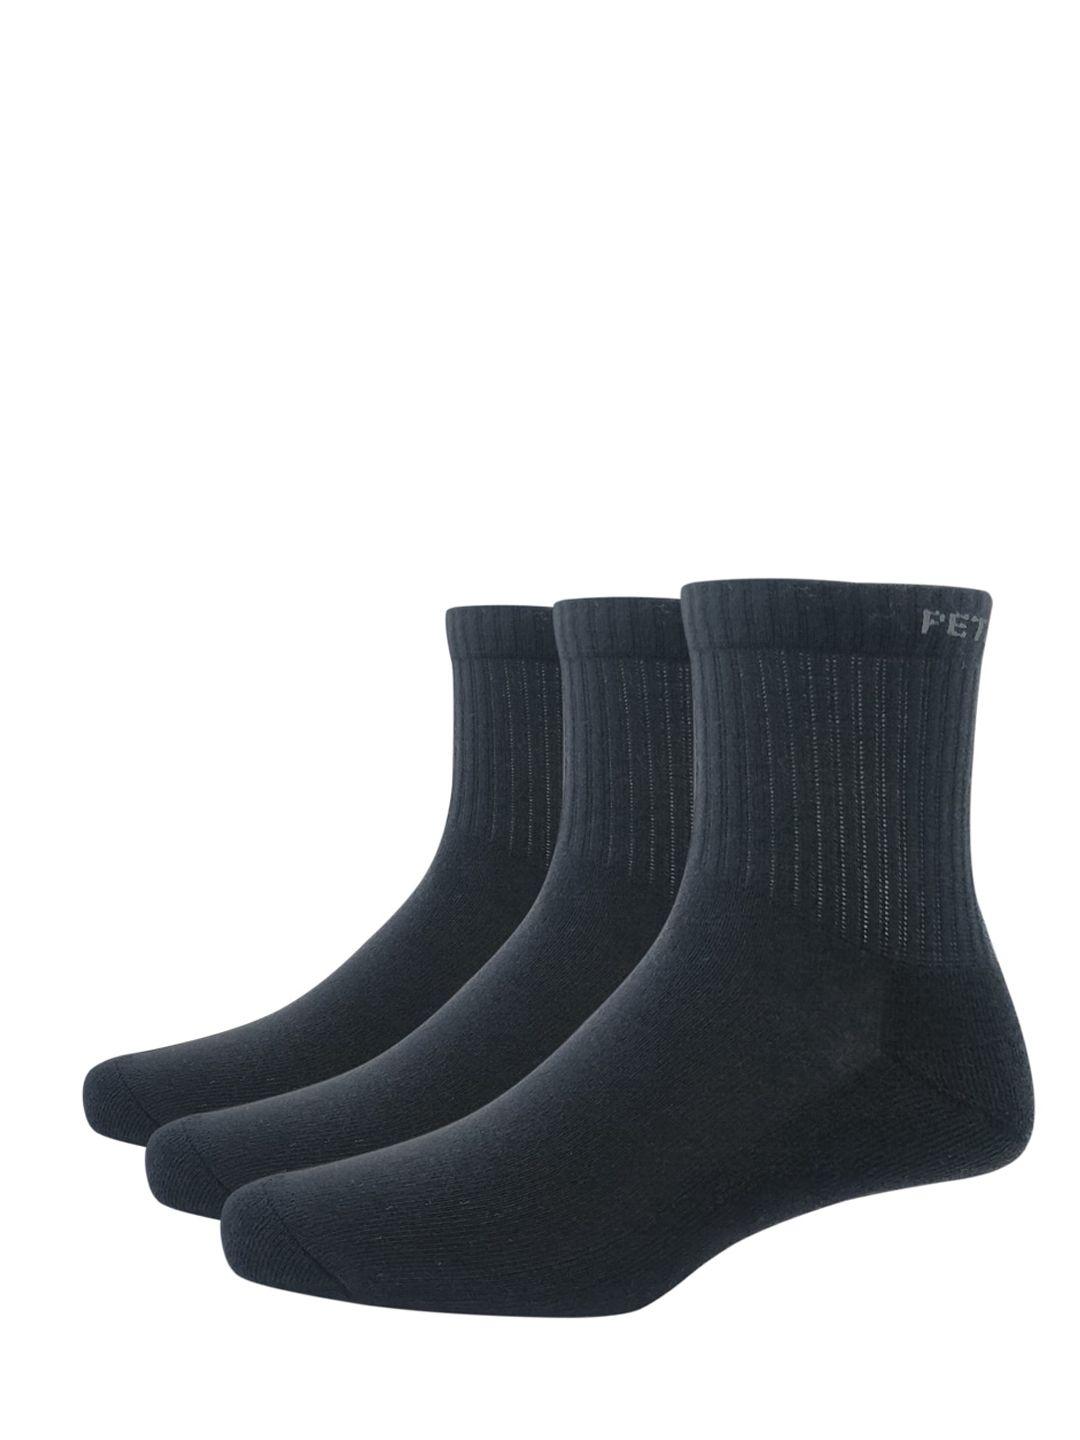 peter-england-men-pack-of-3-black-solid-above-ankle-length-socks